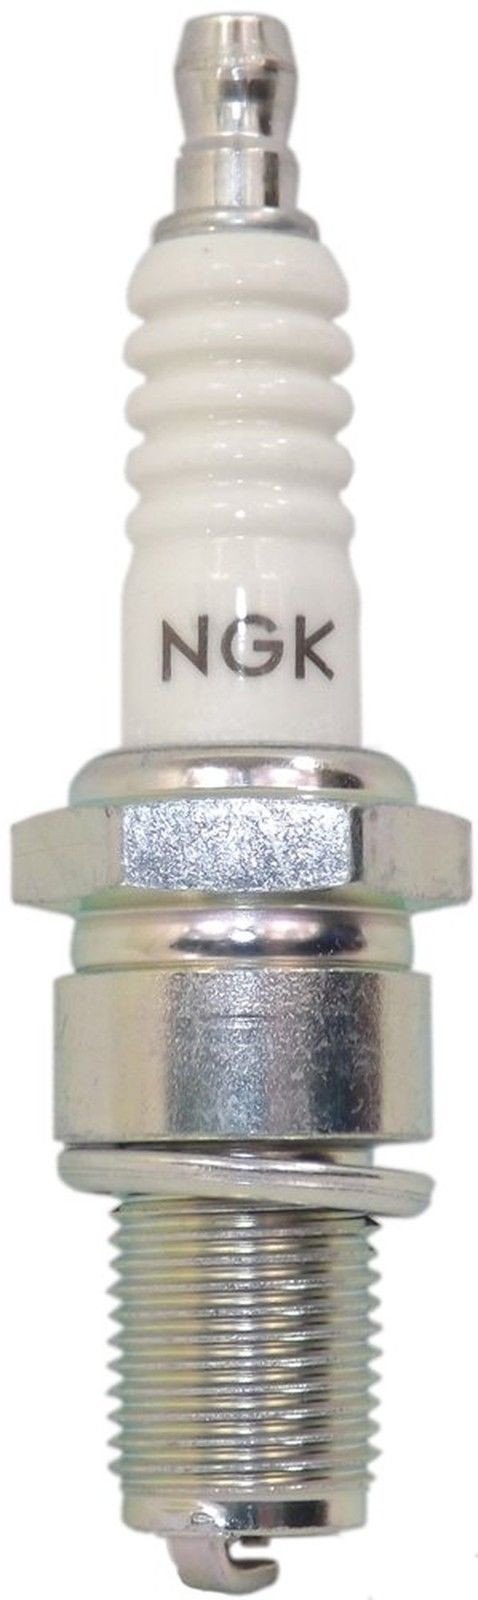 Ngk (7677) Bmr2A Standard Spark Plug Pack Of 1 - $6.95